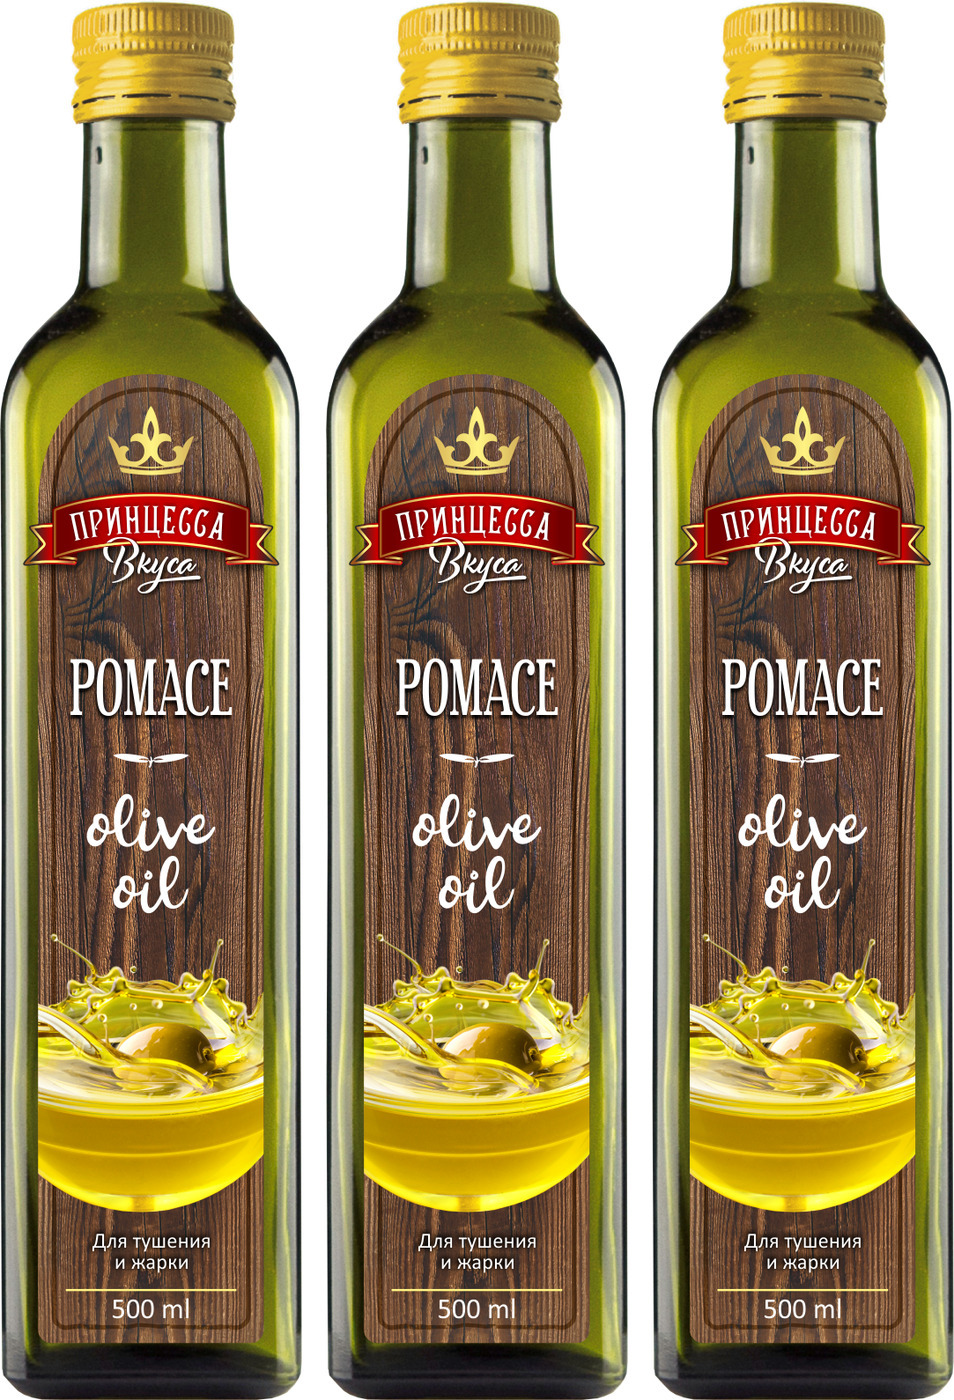 Оливковое масло принцесса